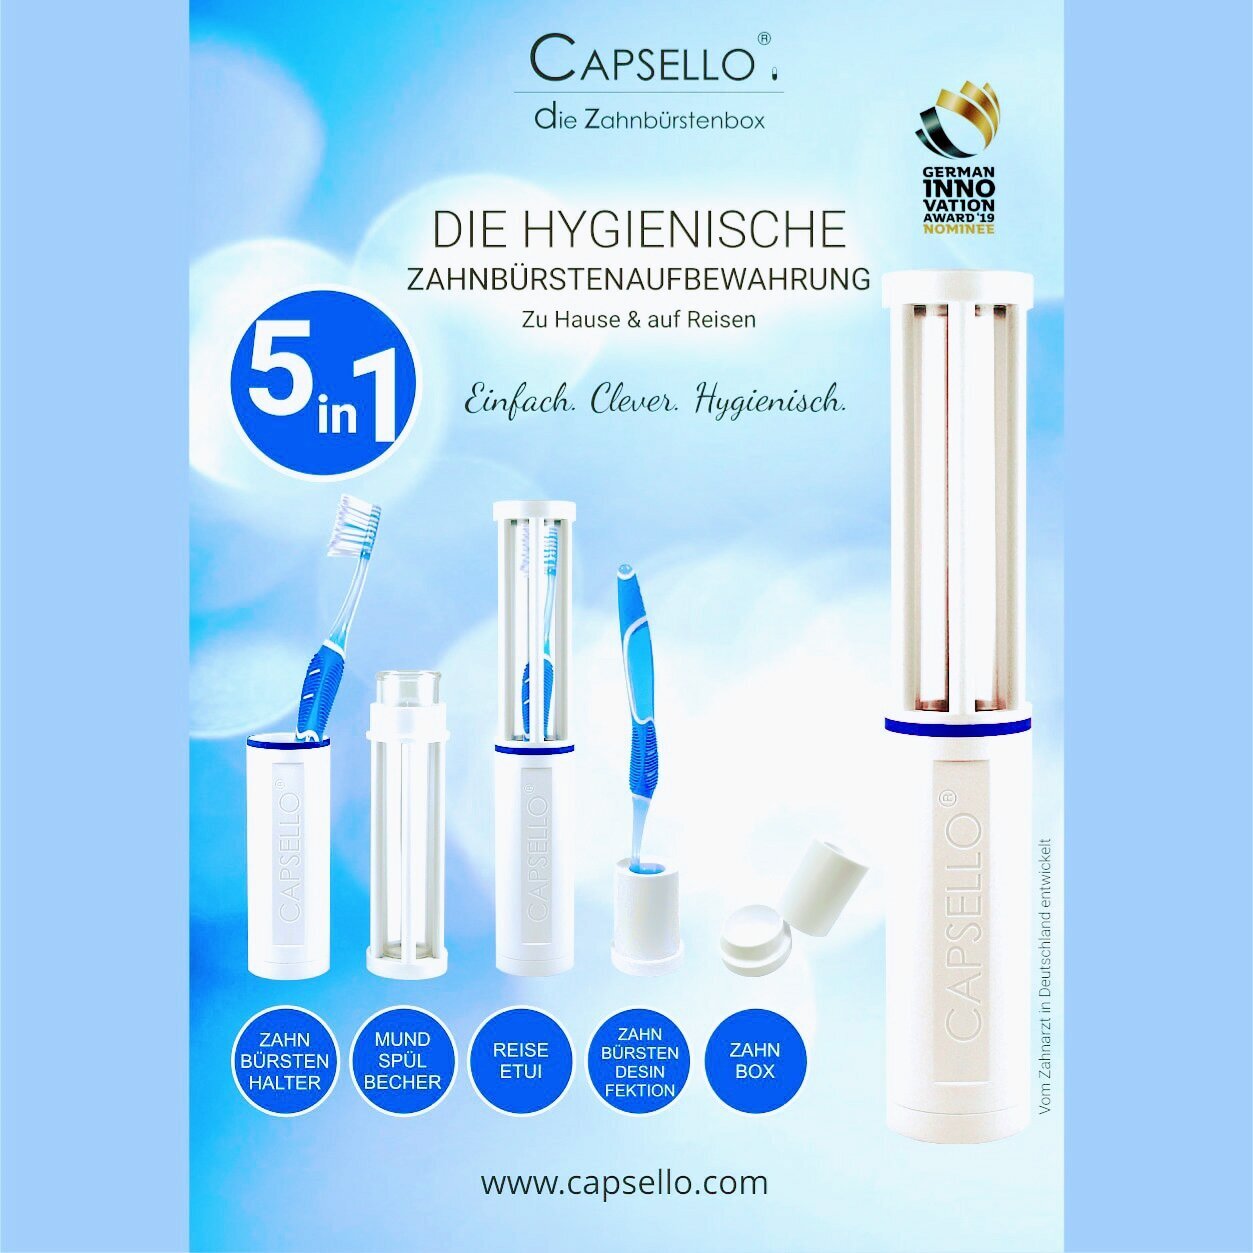 Bilder Capsello - Die patentierte Hygienebox für die Handzahnbürste